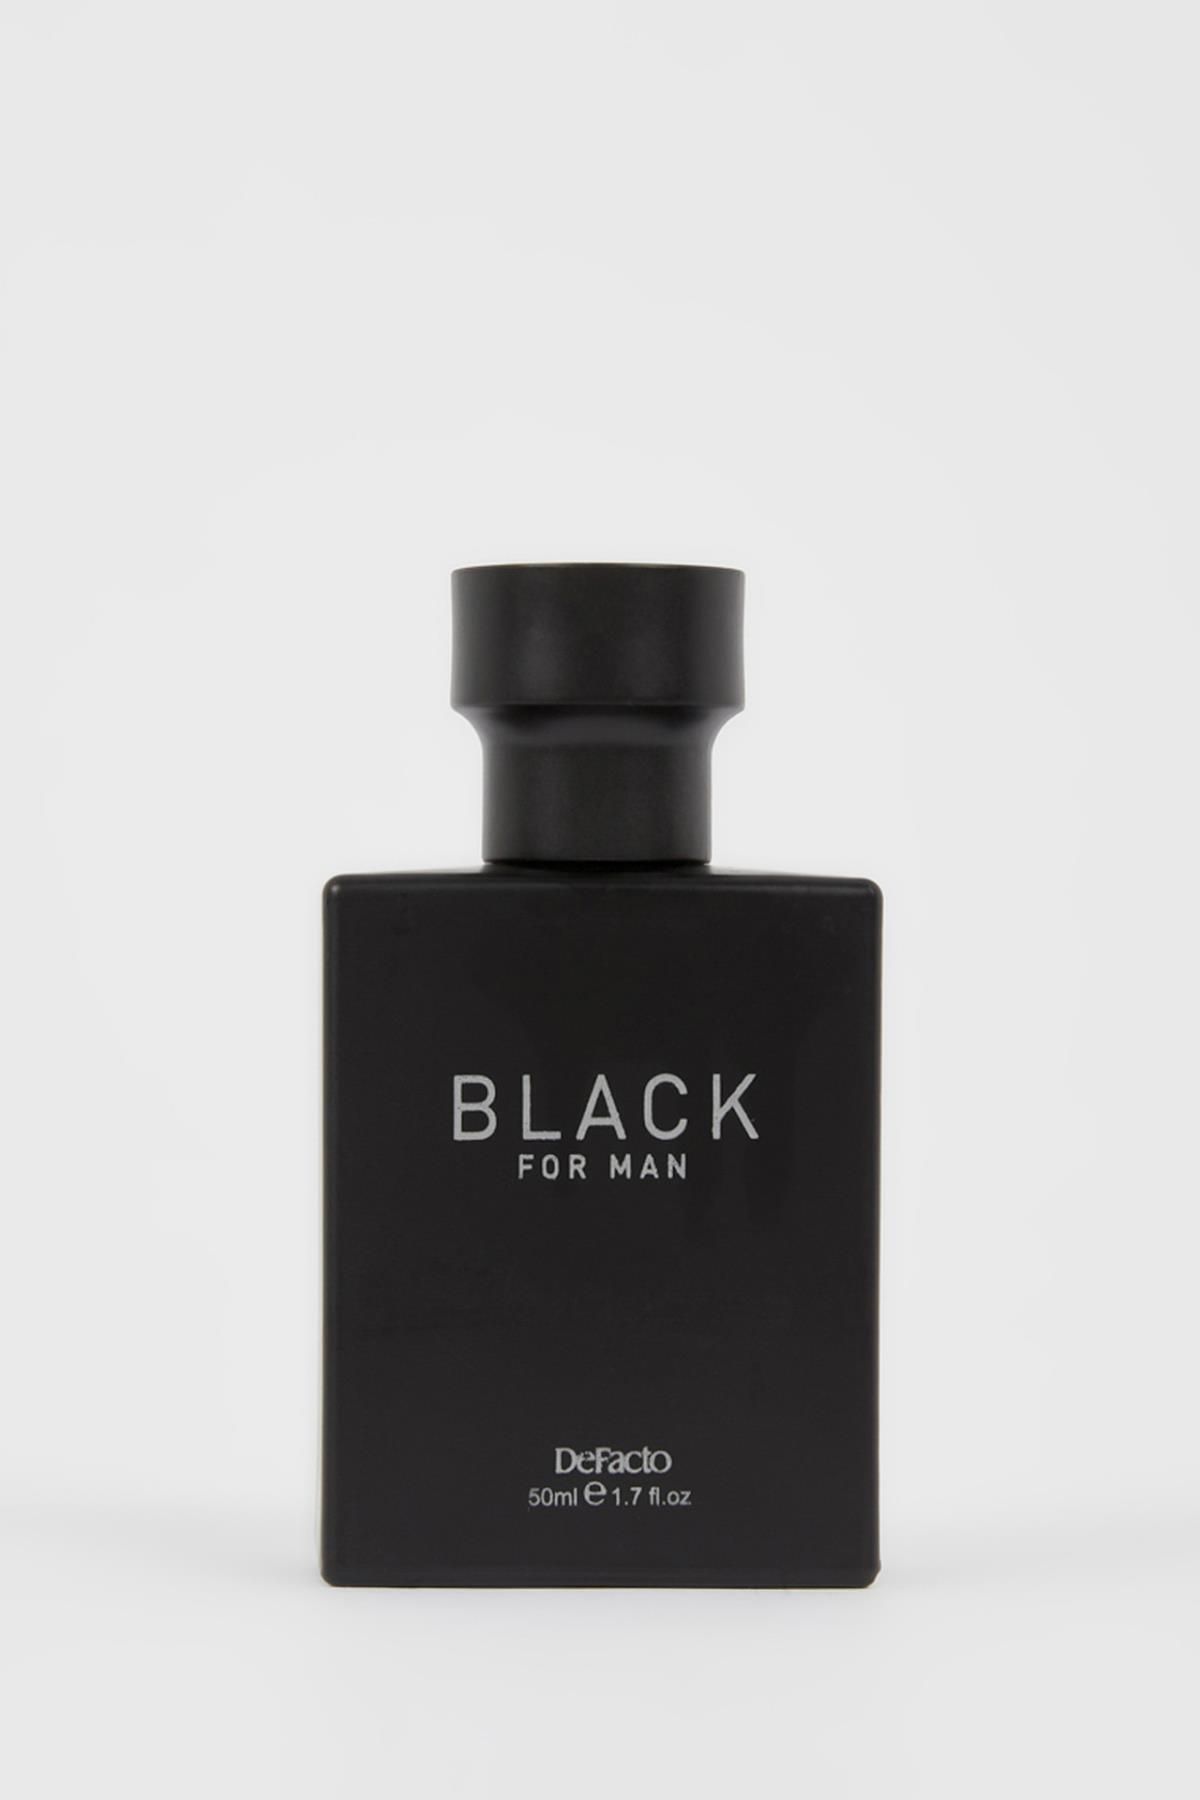 Defacto Black Erkek Parfüm 50 ml L4179aznsbk23